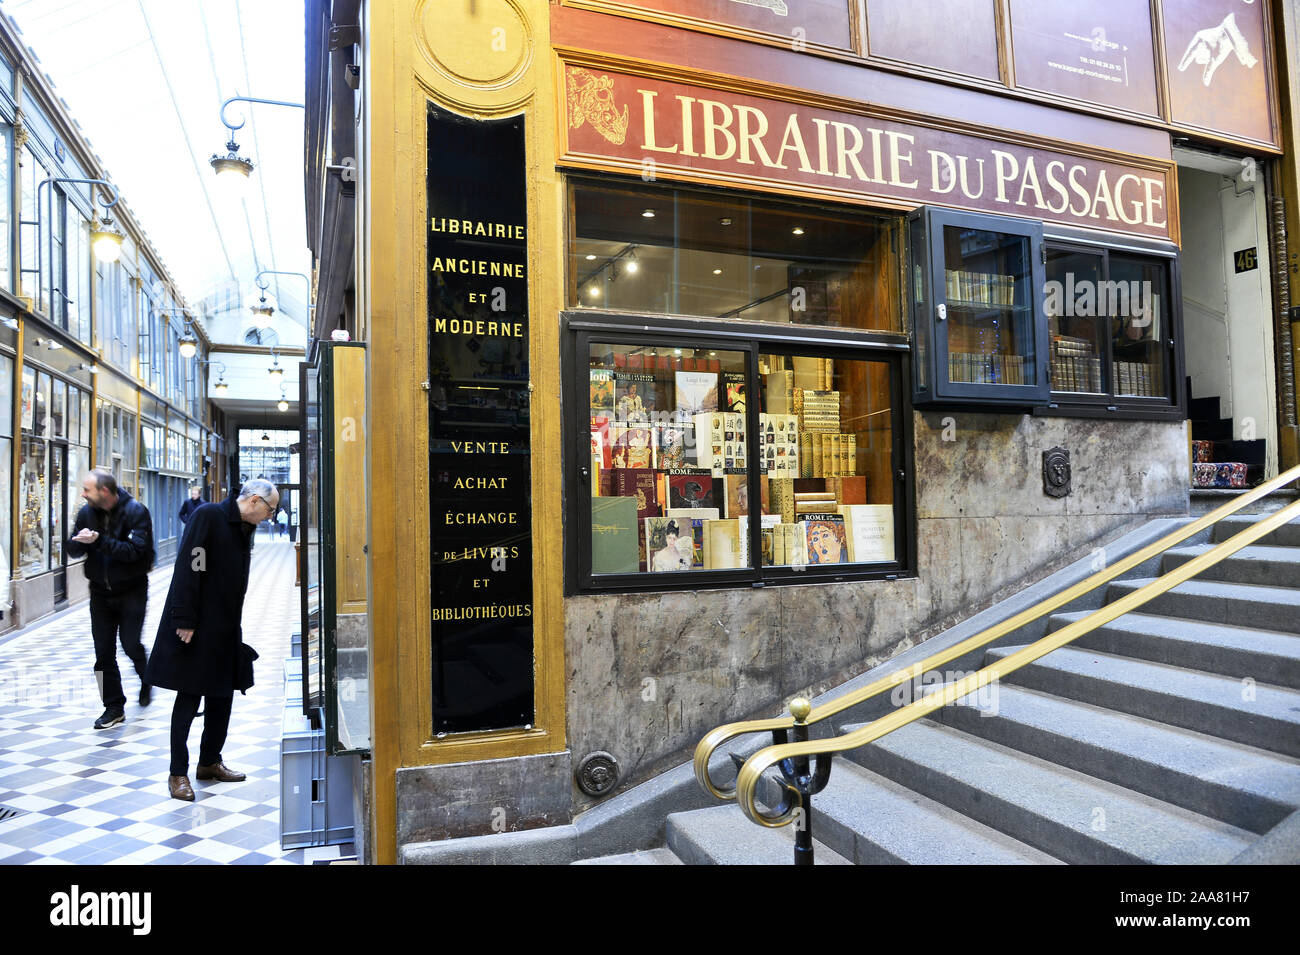 Librairie du Passage - Paris - France Stock Photo